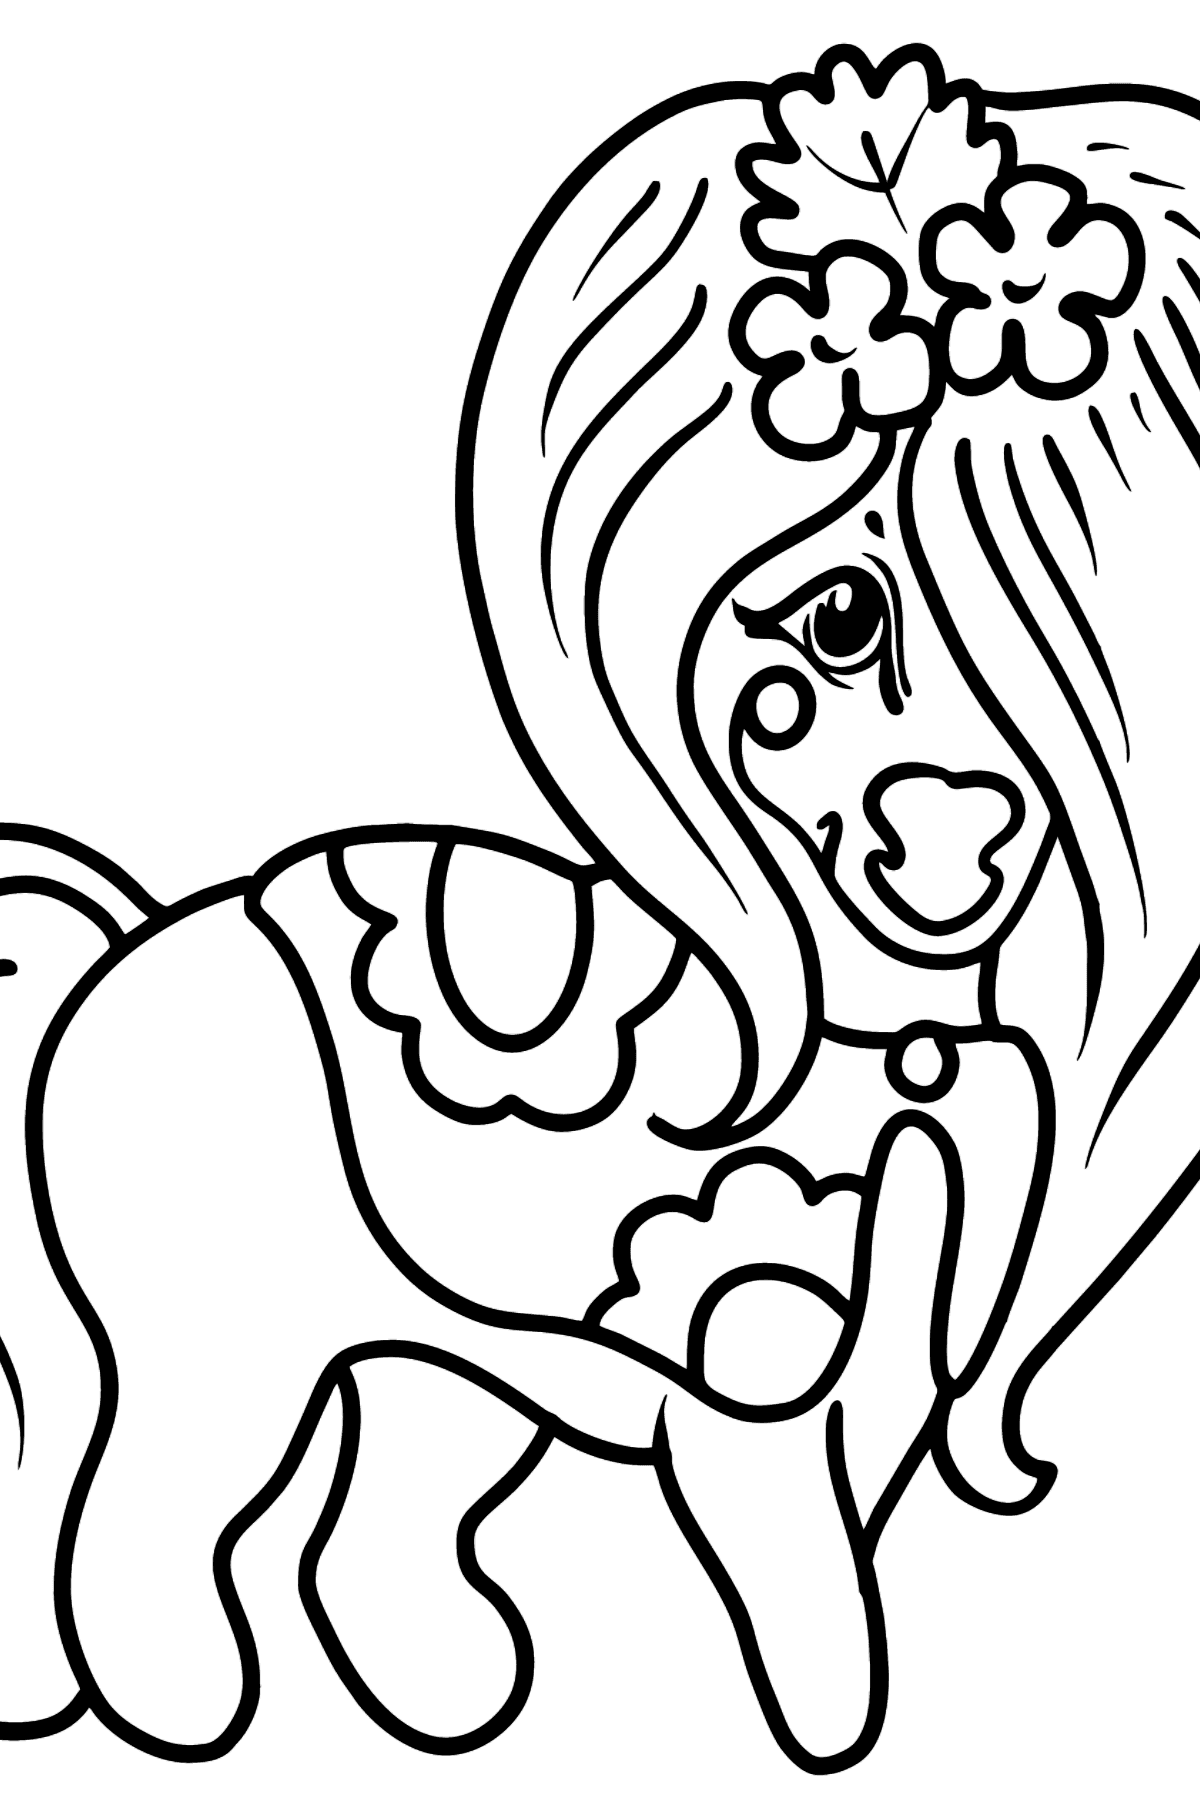 Dibujo para colorear - Hermoso Pony - Dibujos para Colorear para Niños